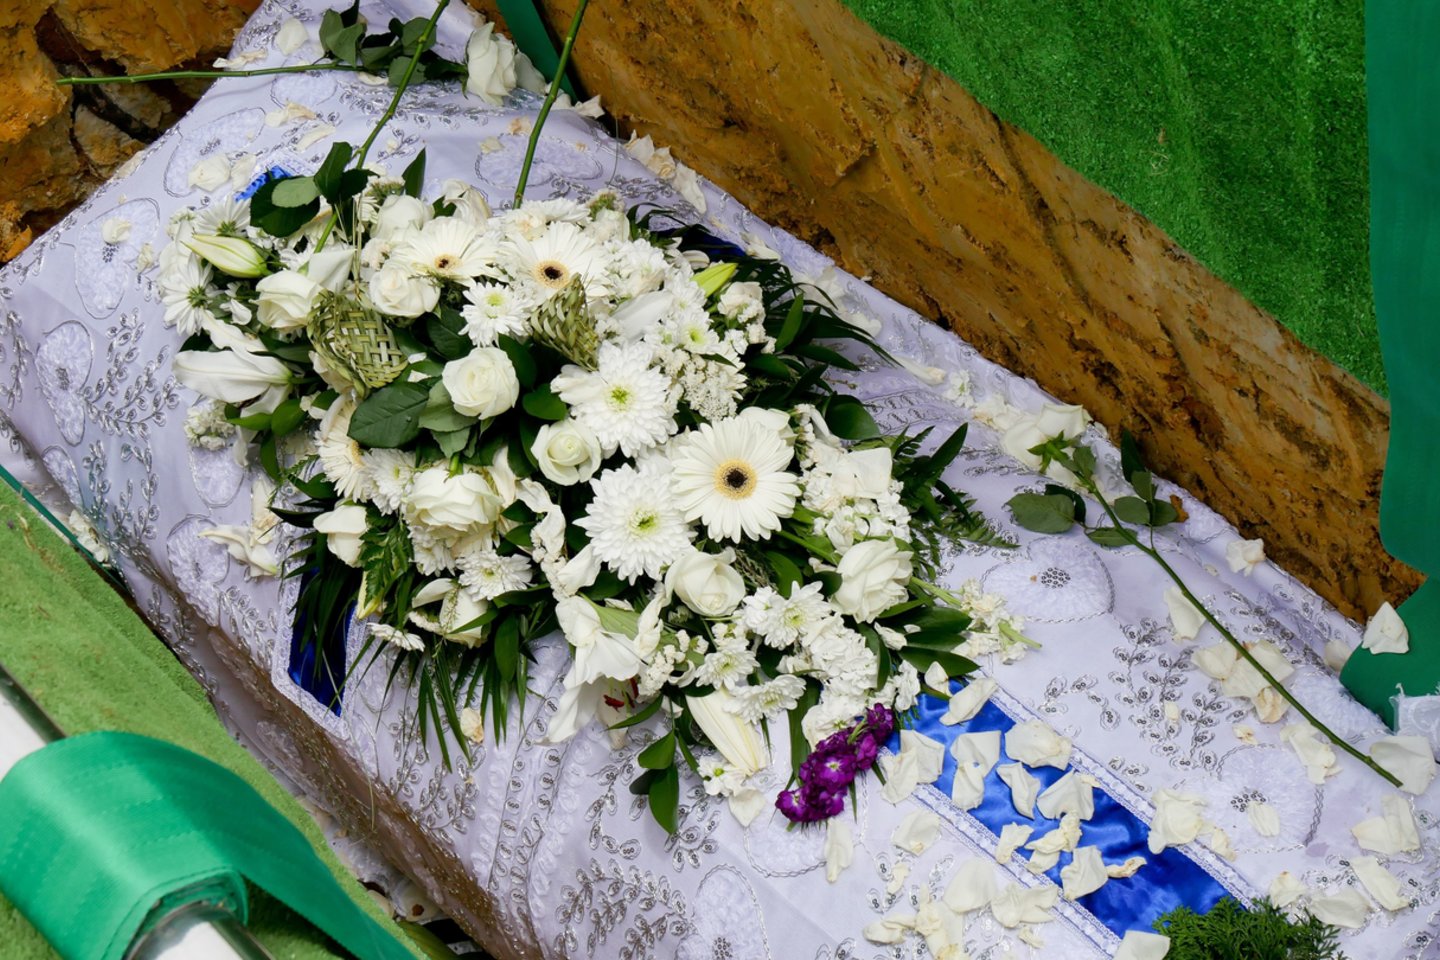  Balandį atliktas tyrimas rodo, kad 60 proc. apklaustųjų kremavimas yra labiau priimtinas negu laidojimas.<br> 123rf nuotr.